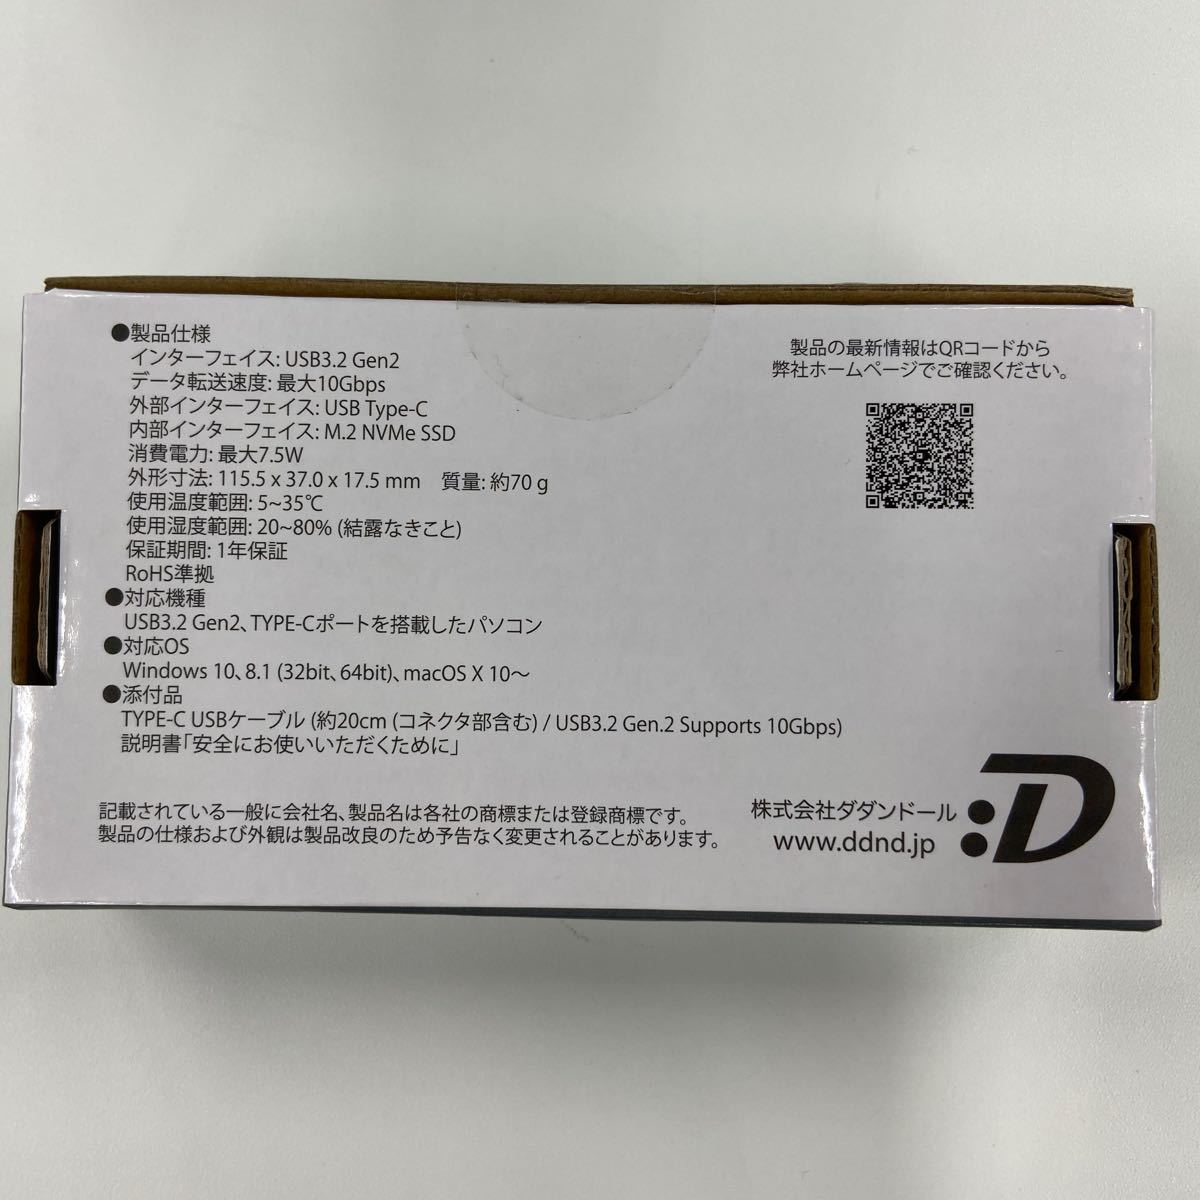 【商談中です】Dadandall ダダンドール DDSS002T02BK 2TB USB3.2 Gen2 ポータブルSSD 耐衝撃